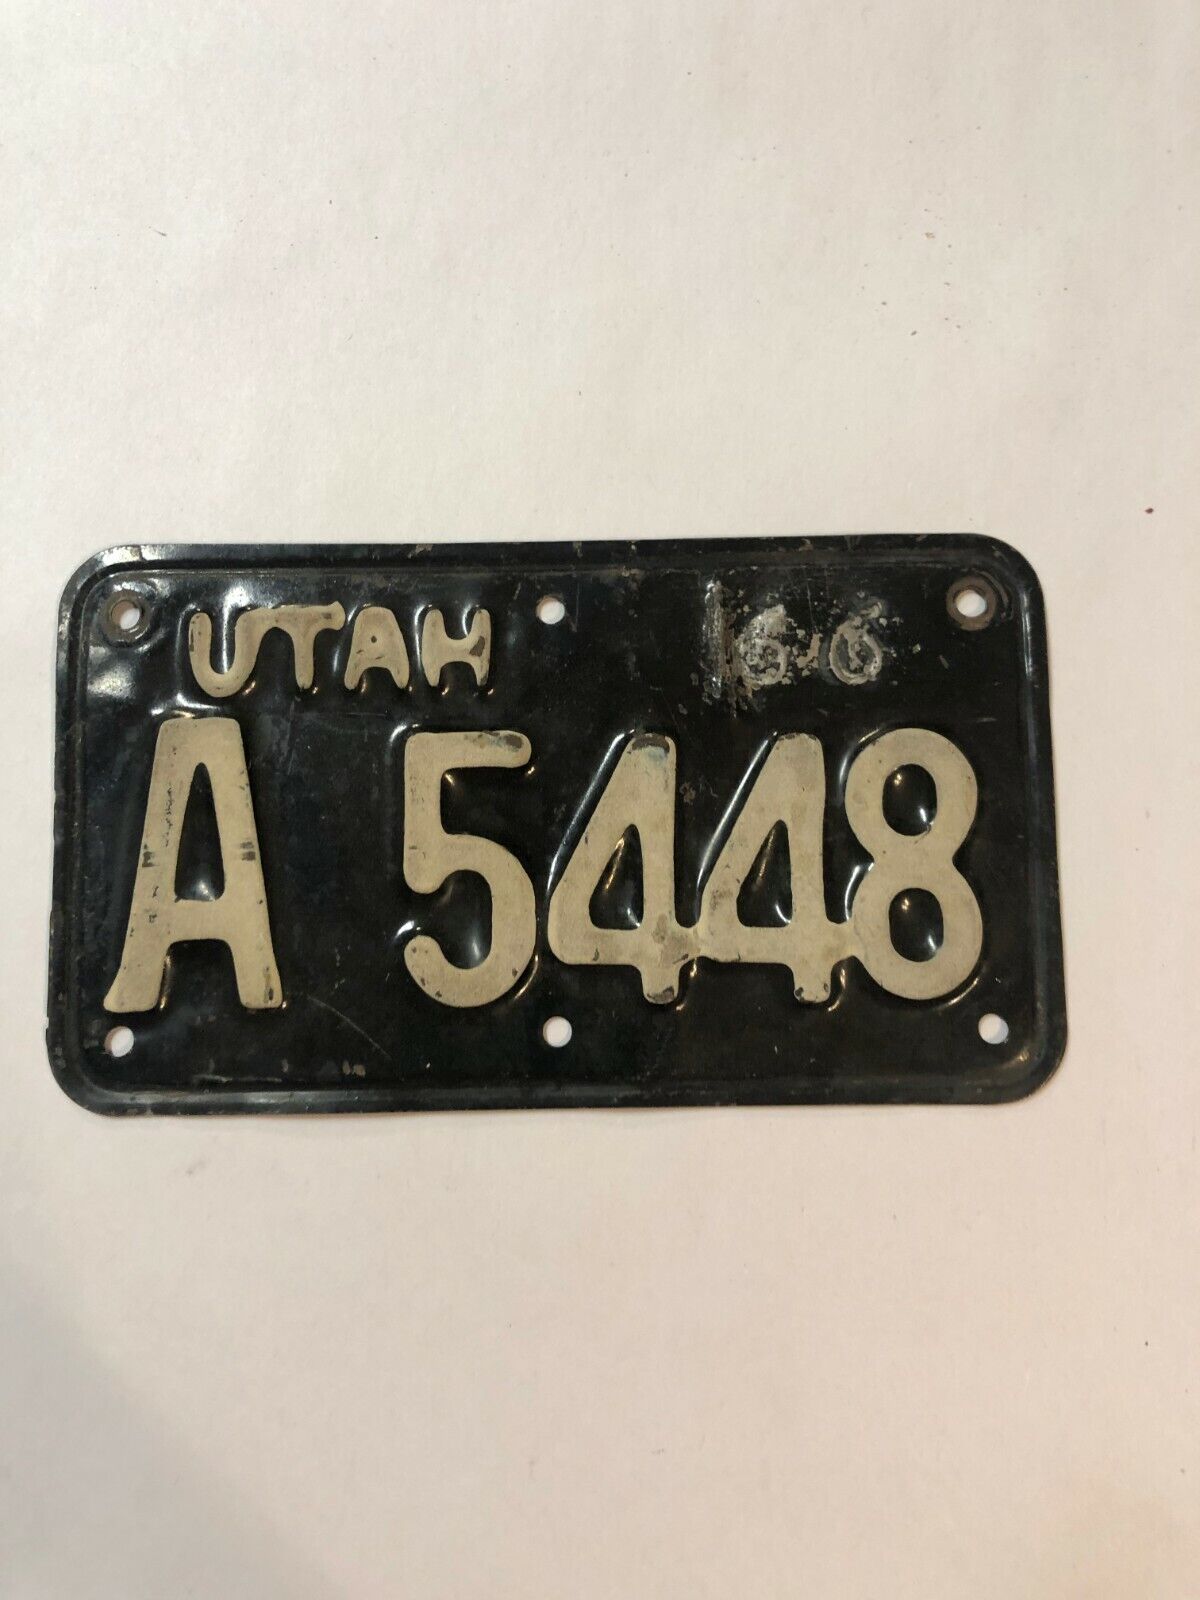 1966 66 Utah Motorcycle License Plate # A 5448